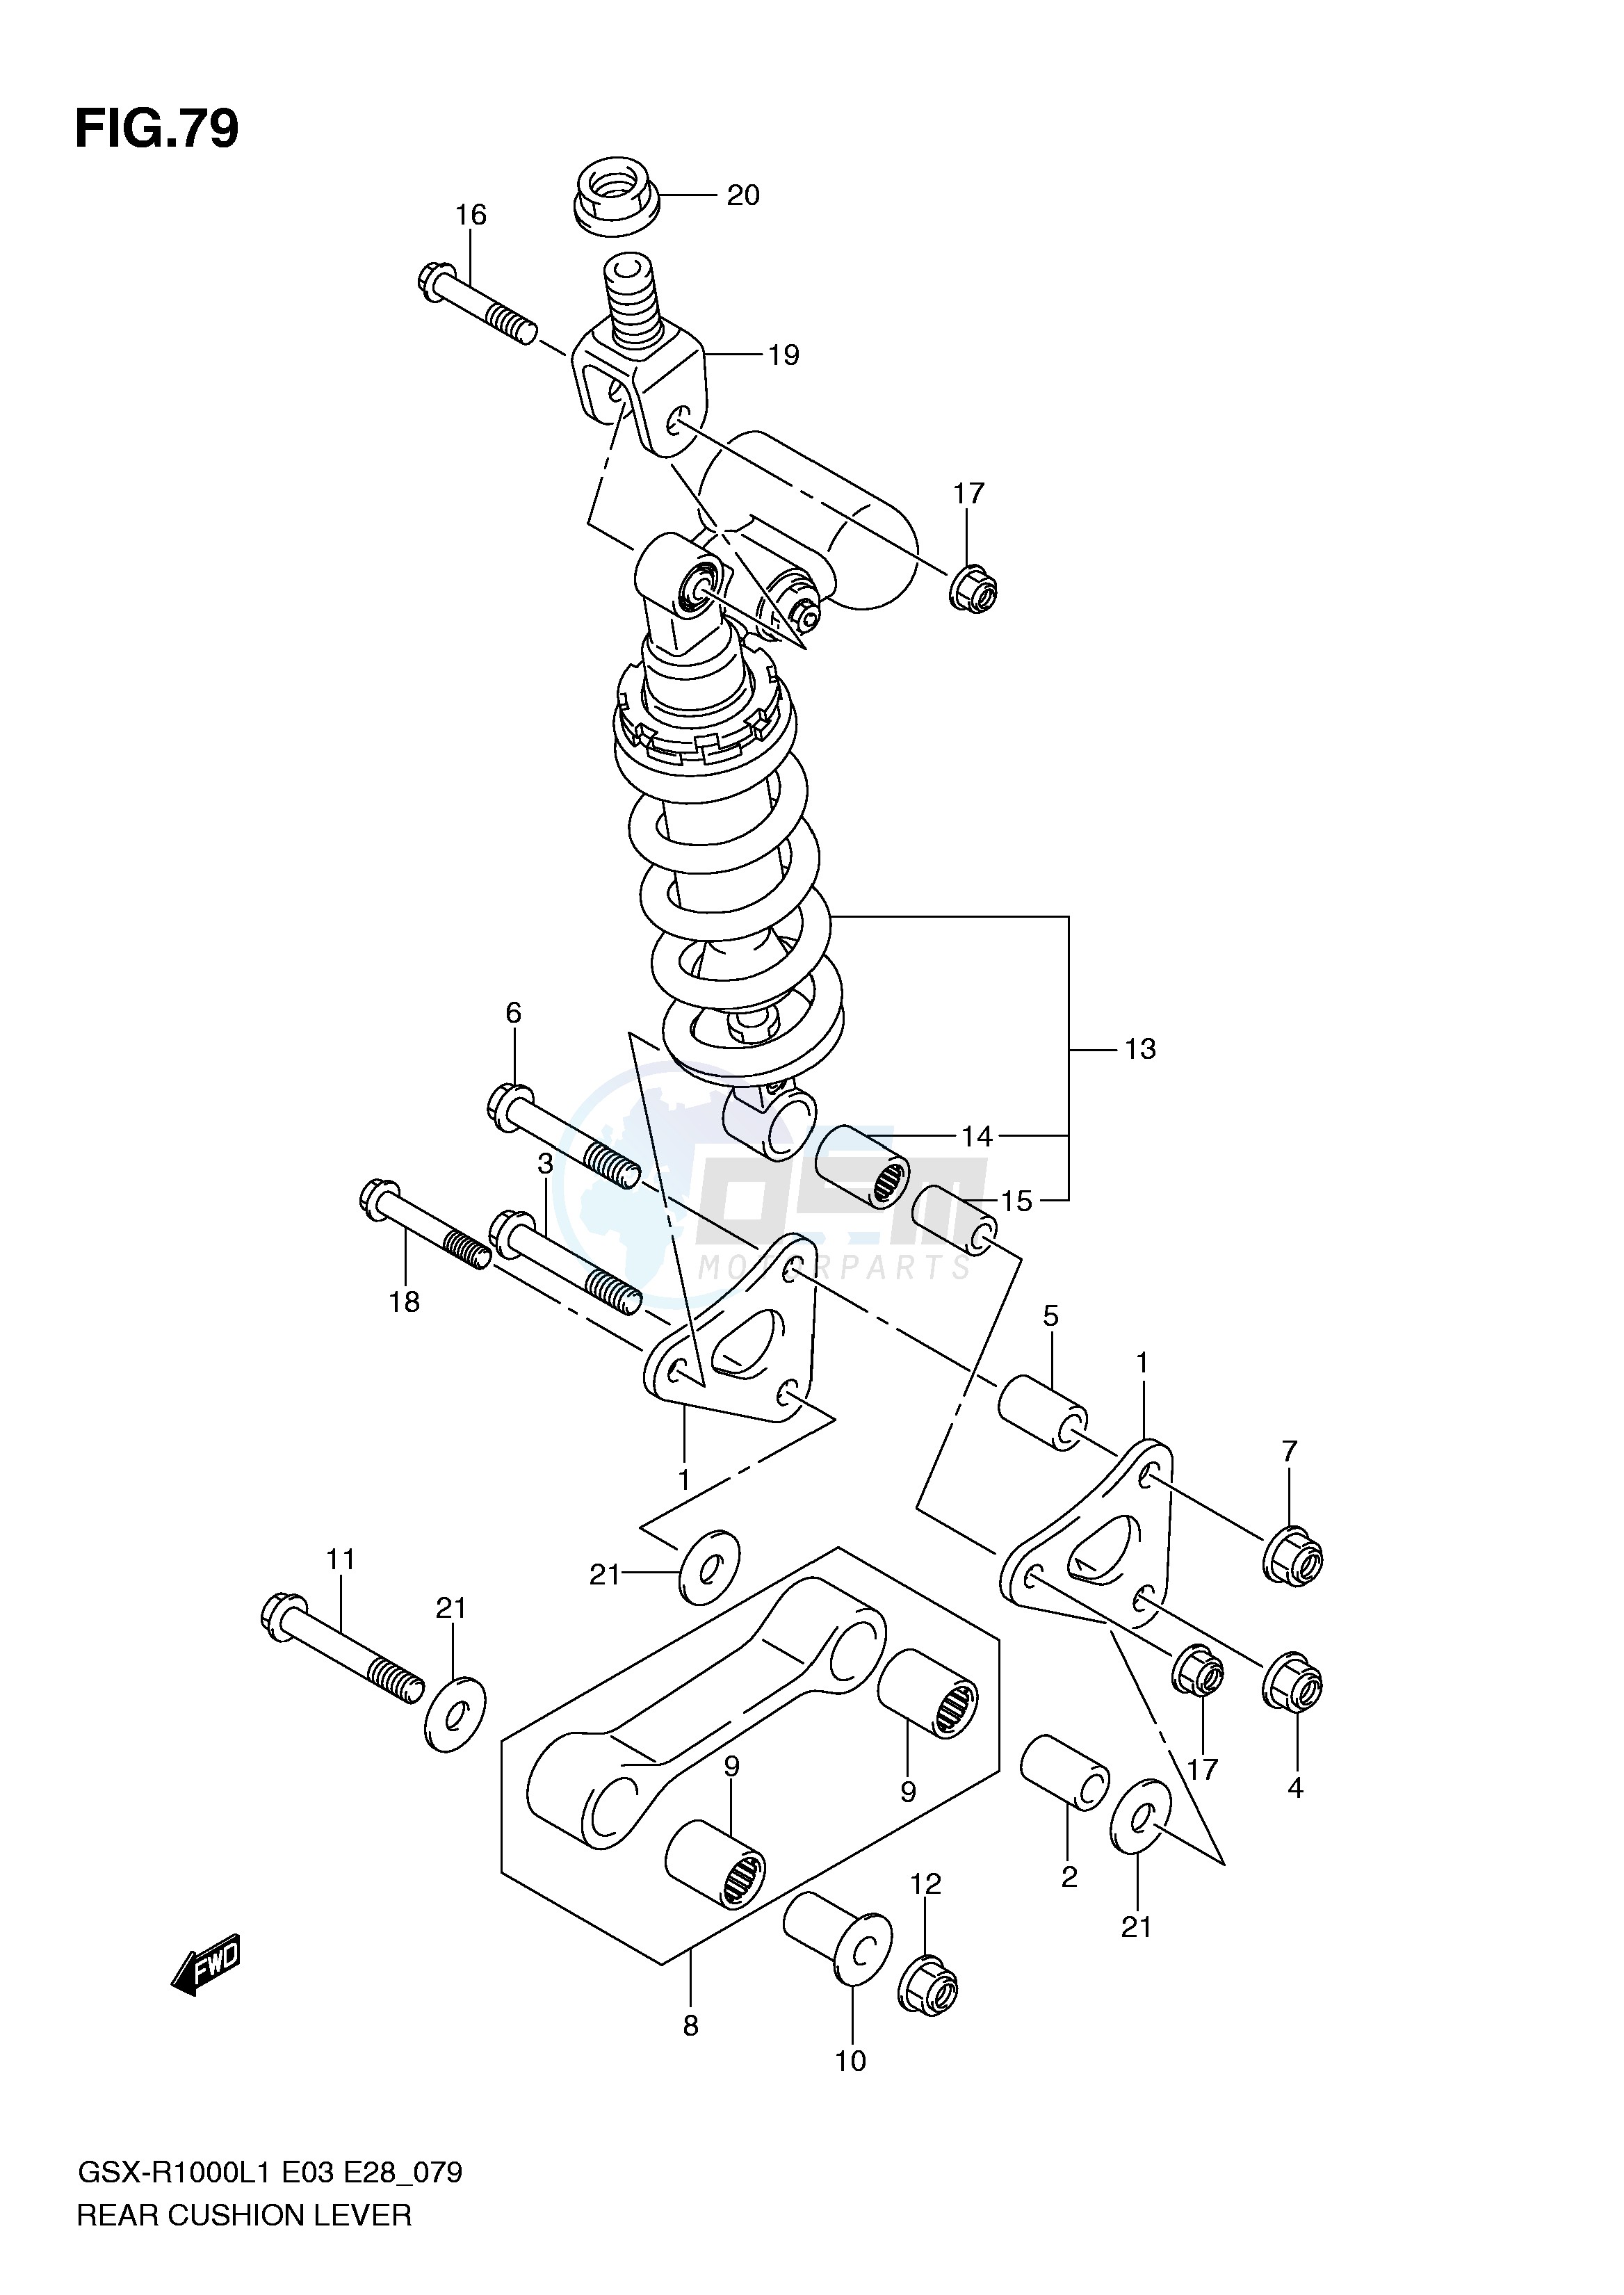 REAR CUSHION LEVER (GSX-R1000L1 E28) blueprint